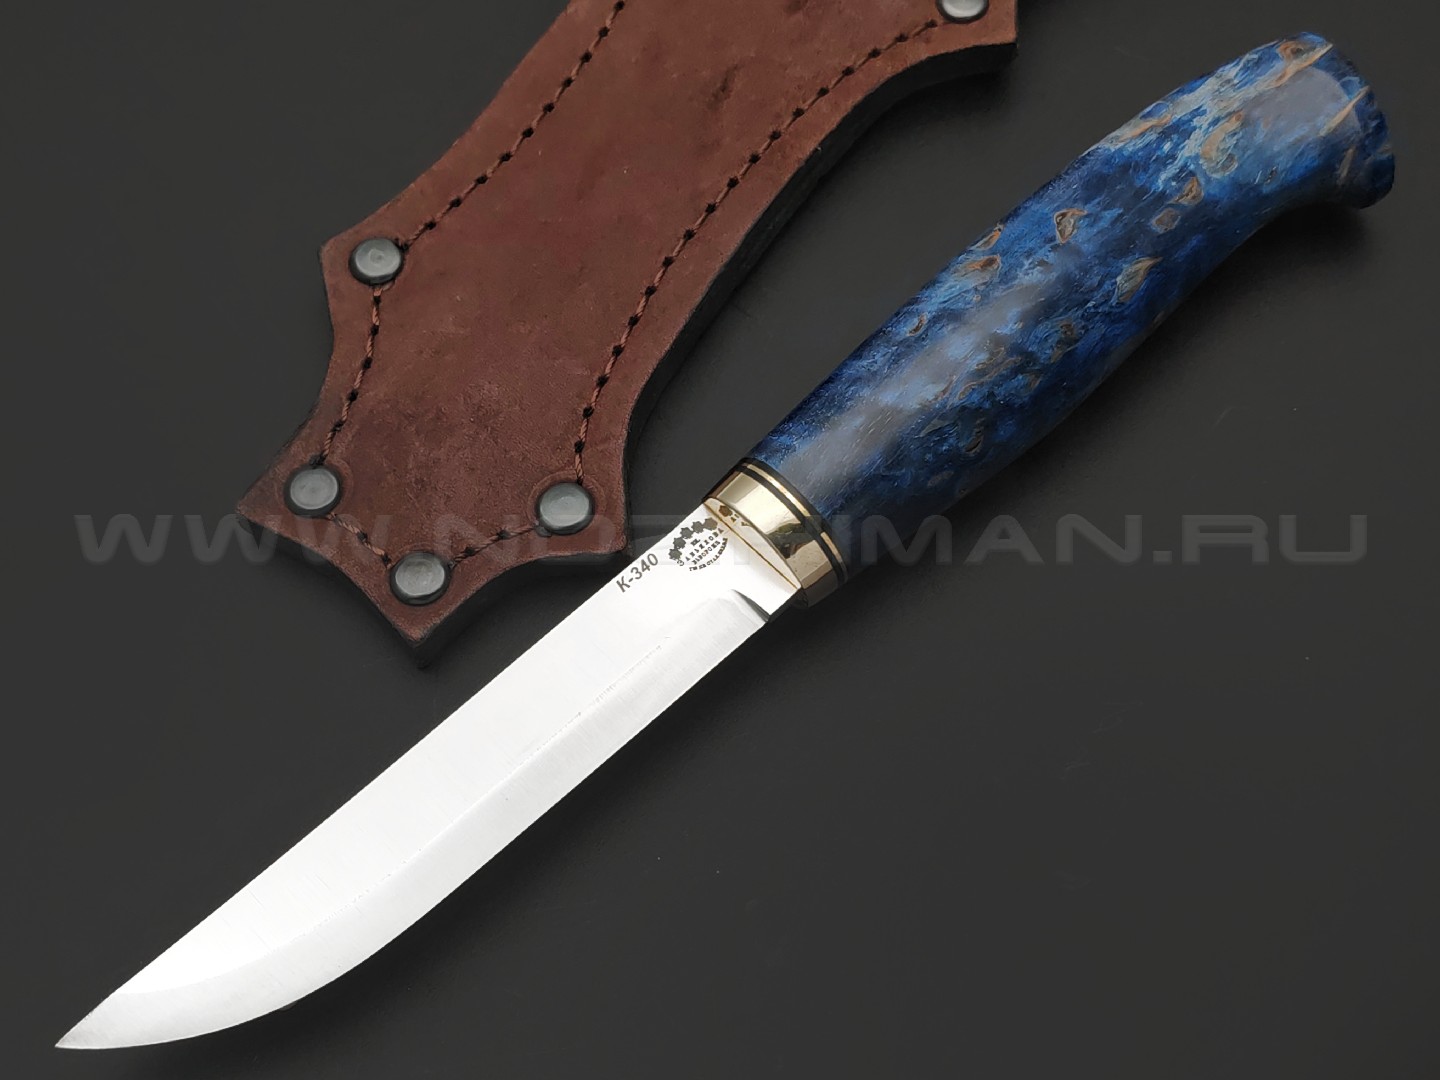 Товарищество Завьялова нож Анатолич сталь K340, рукоять Карельская береза синяя, латунь